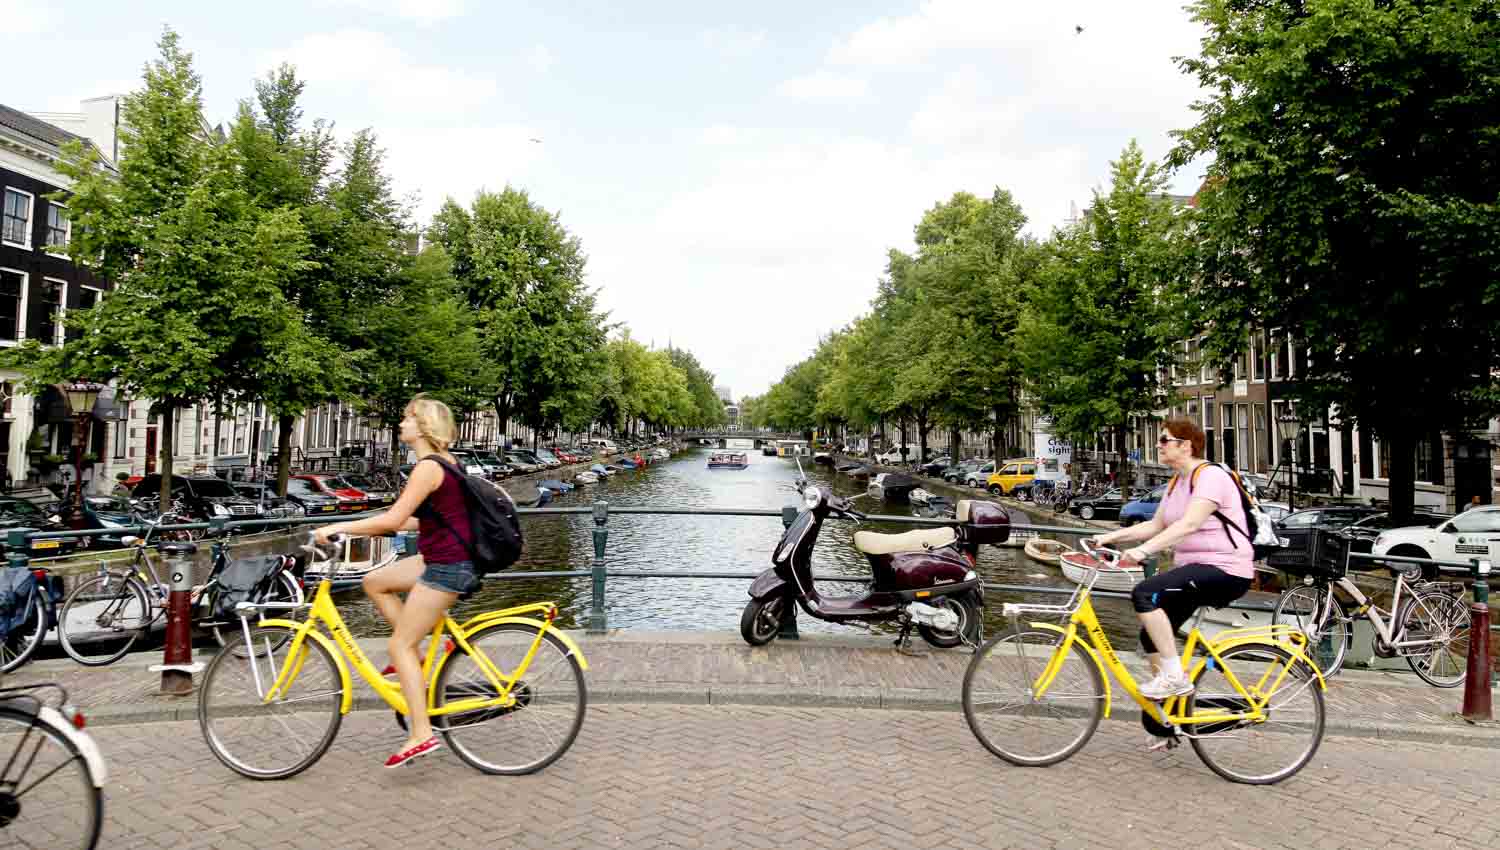 En proie à de nombreux accidents, les Pays-Bas vont couper le moteur des vélos électriques en ville